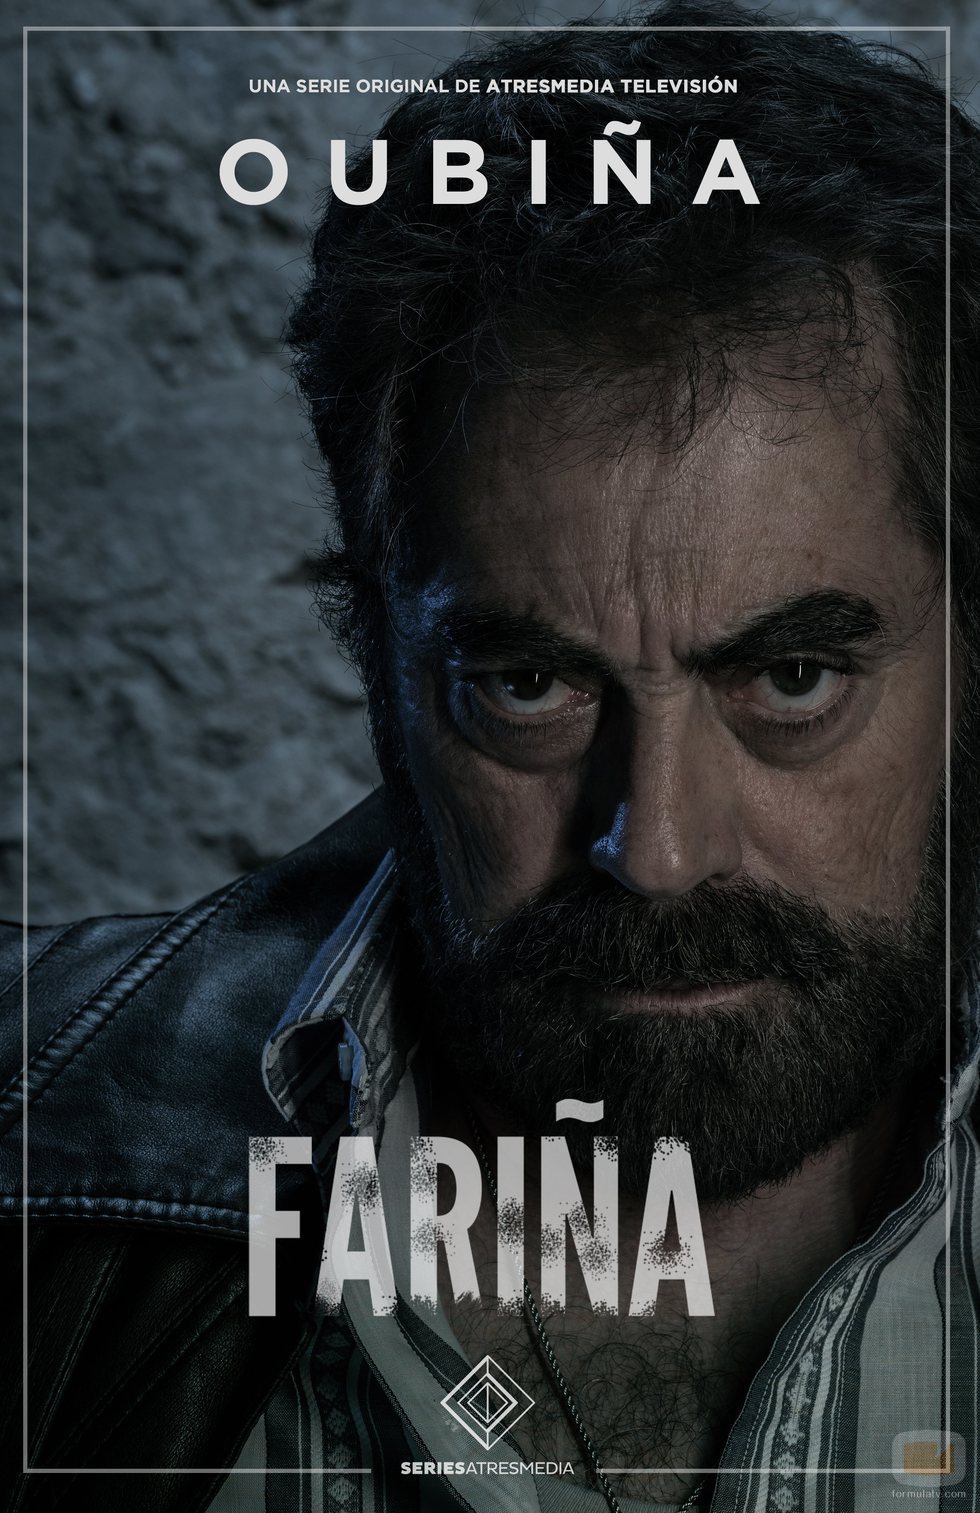 Póster de Oubiña, contrabandista en 'Fariña' de Antena 3